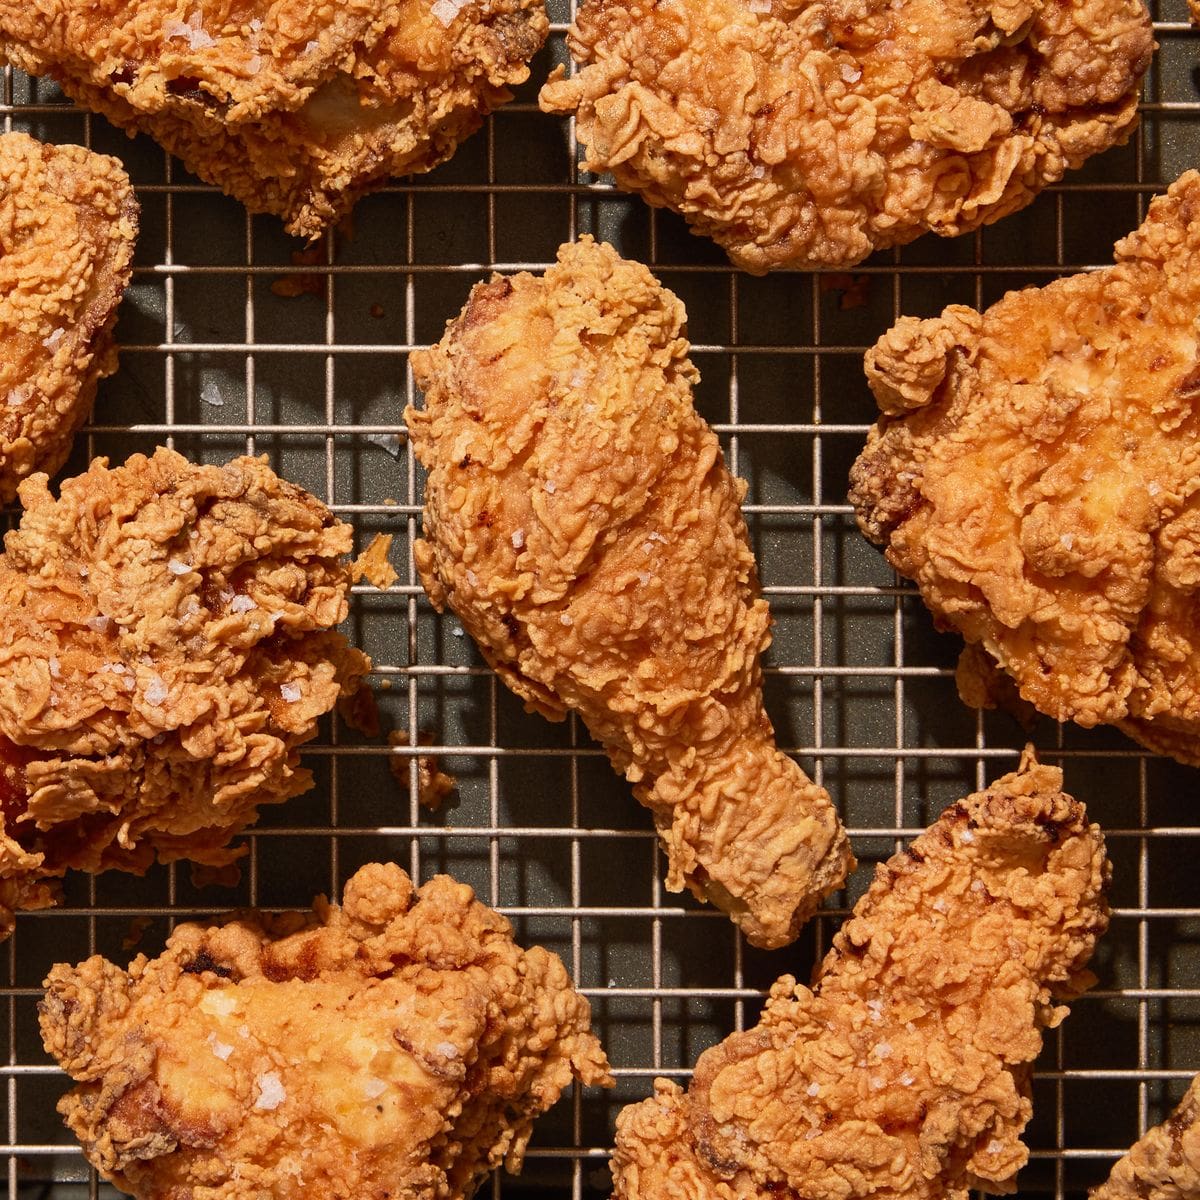 الدجاج المقلي من الوصفات السهلة والبسيطة لطهي الدجاج